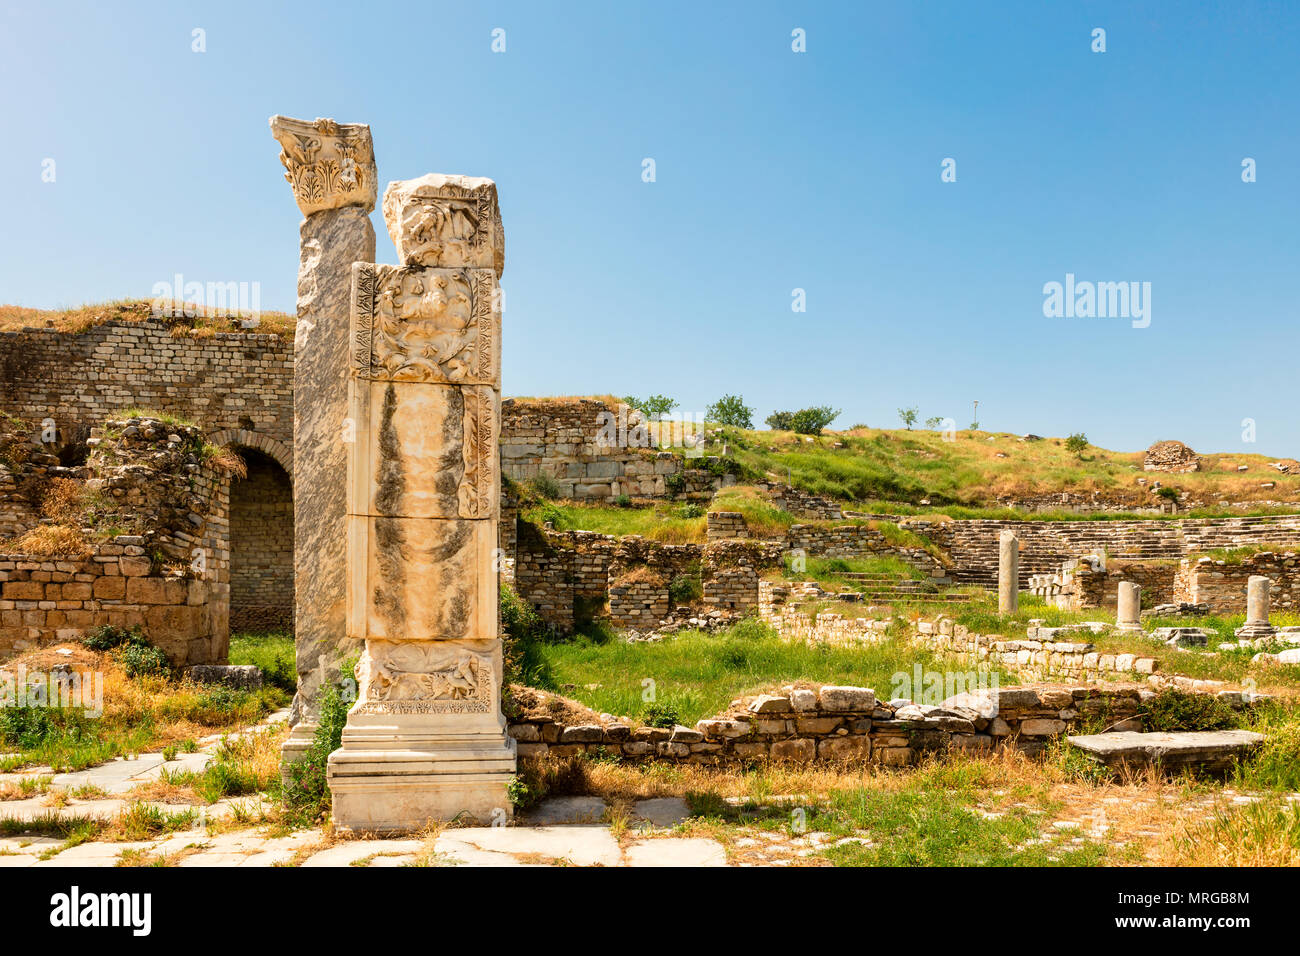 Sito archeologico di Helenistic città di Aphrodisias in Anatolia occidentale, Turchia. Foto Stock